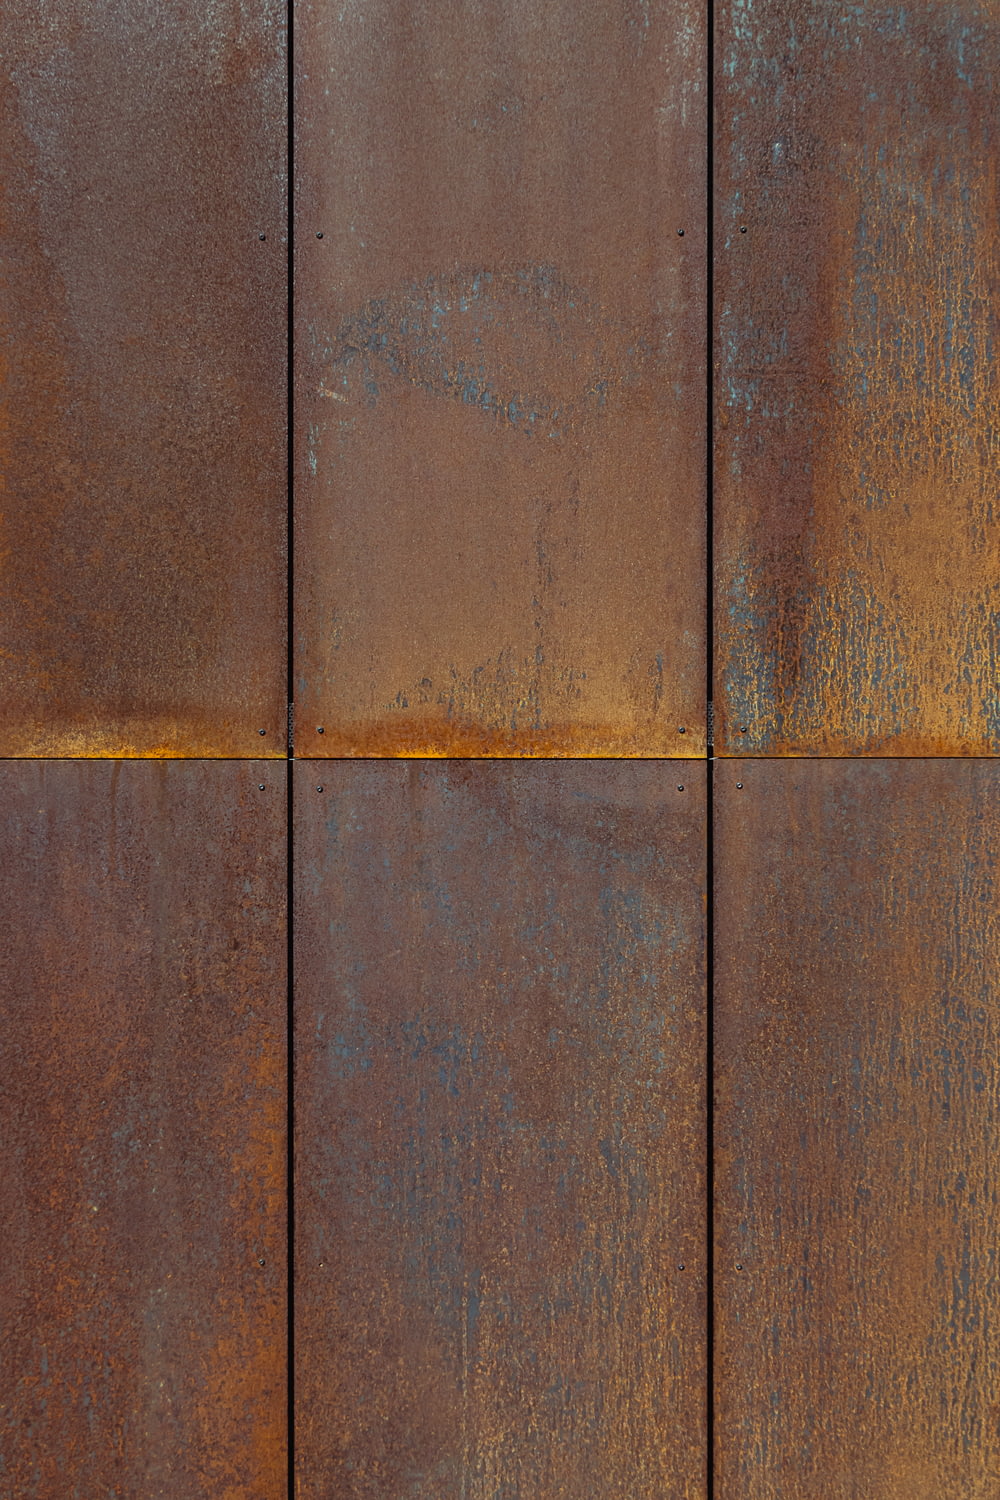 superfície de madeira marrom e cinza